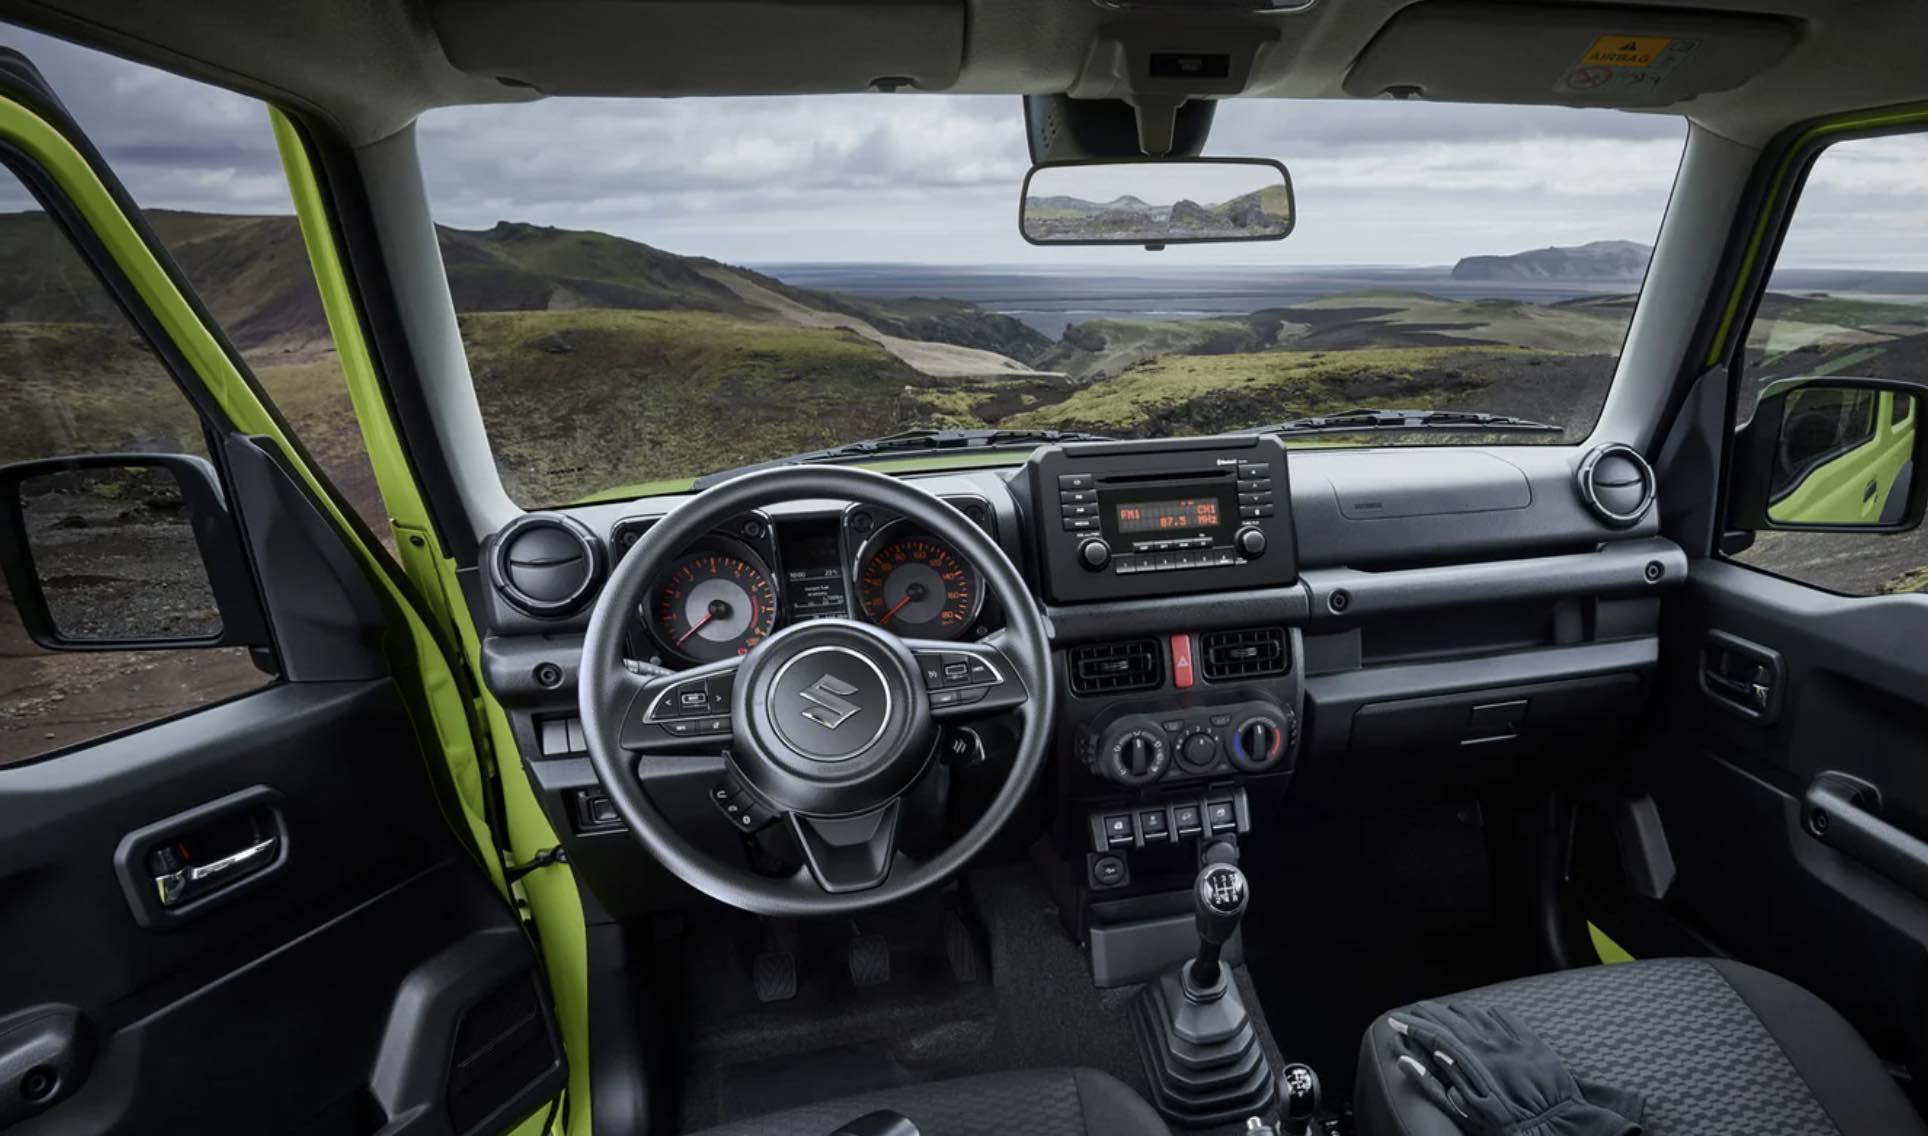 Сравнение внедорожников: Подержанный Suzuki Jimny против новой Lada Niva Travel